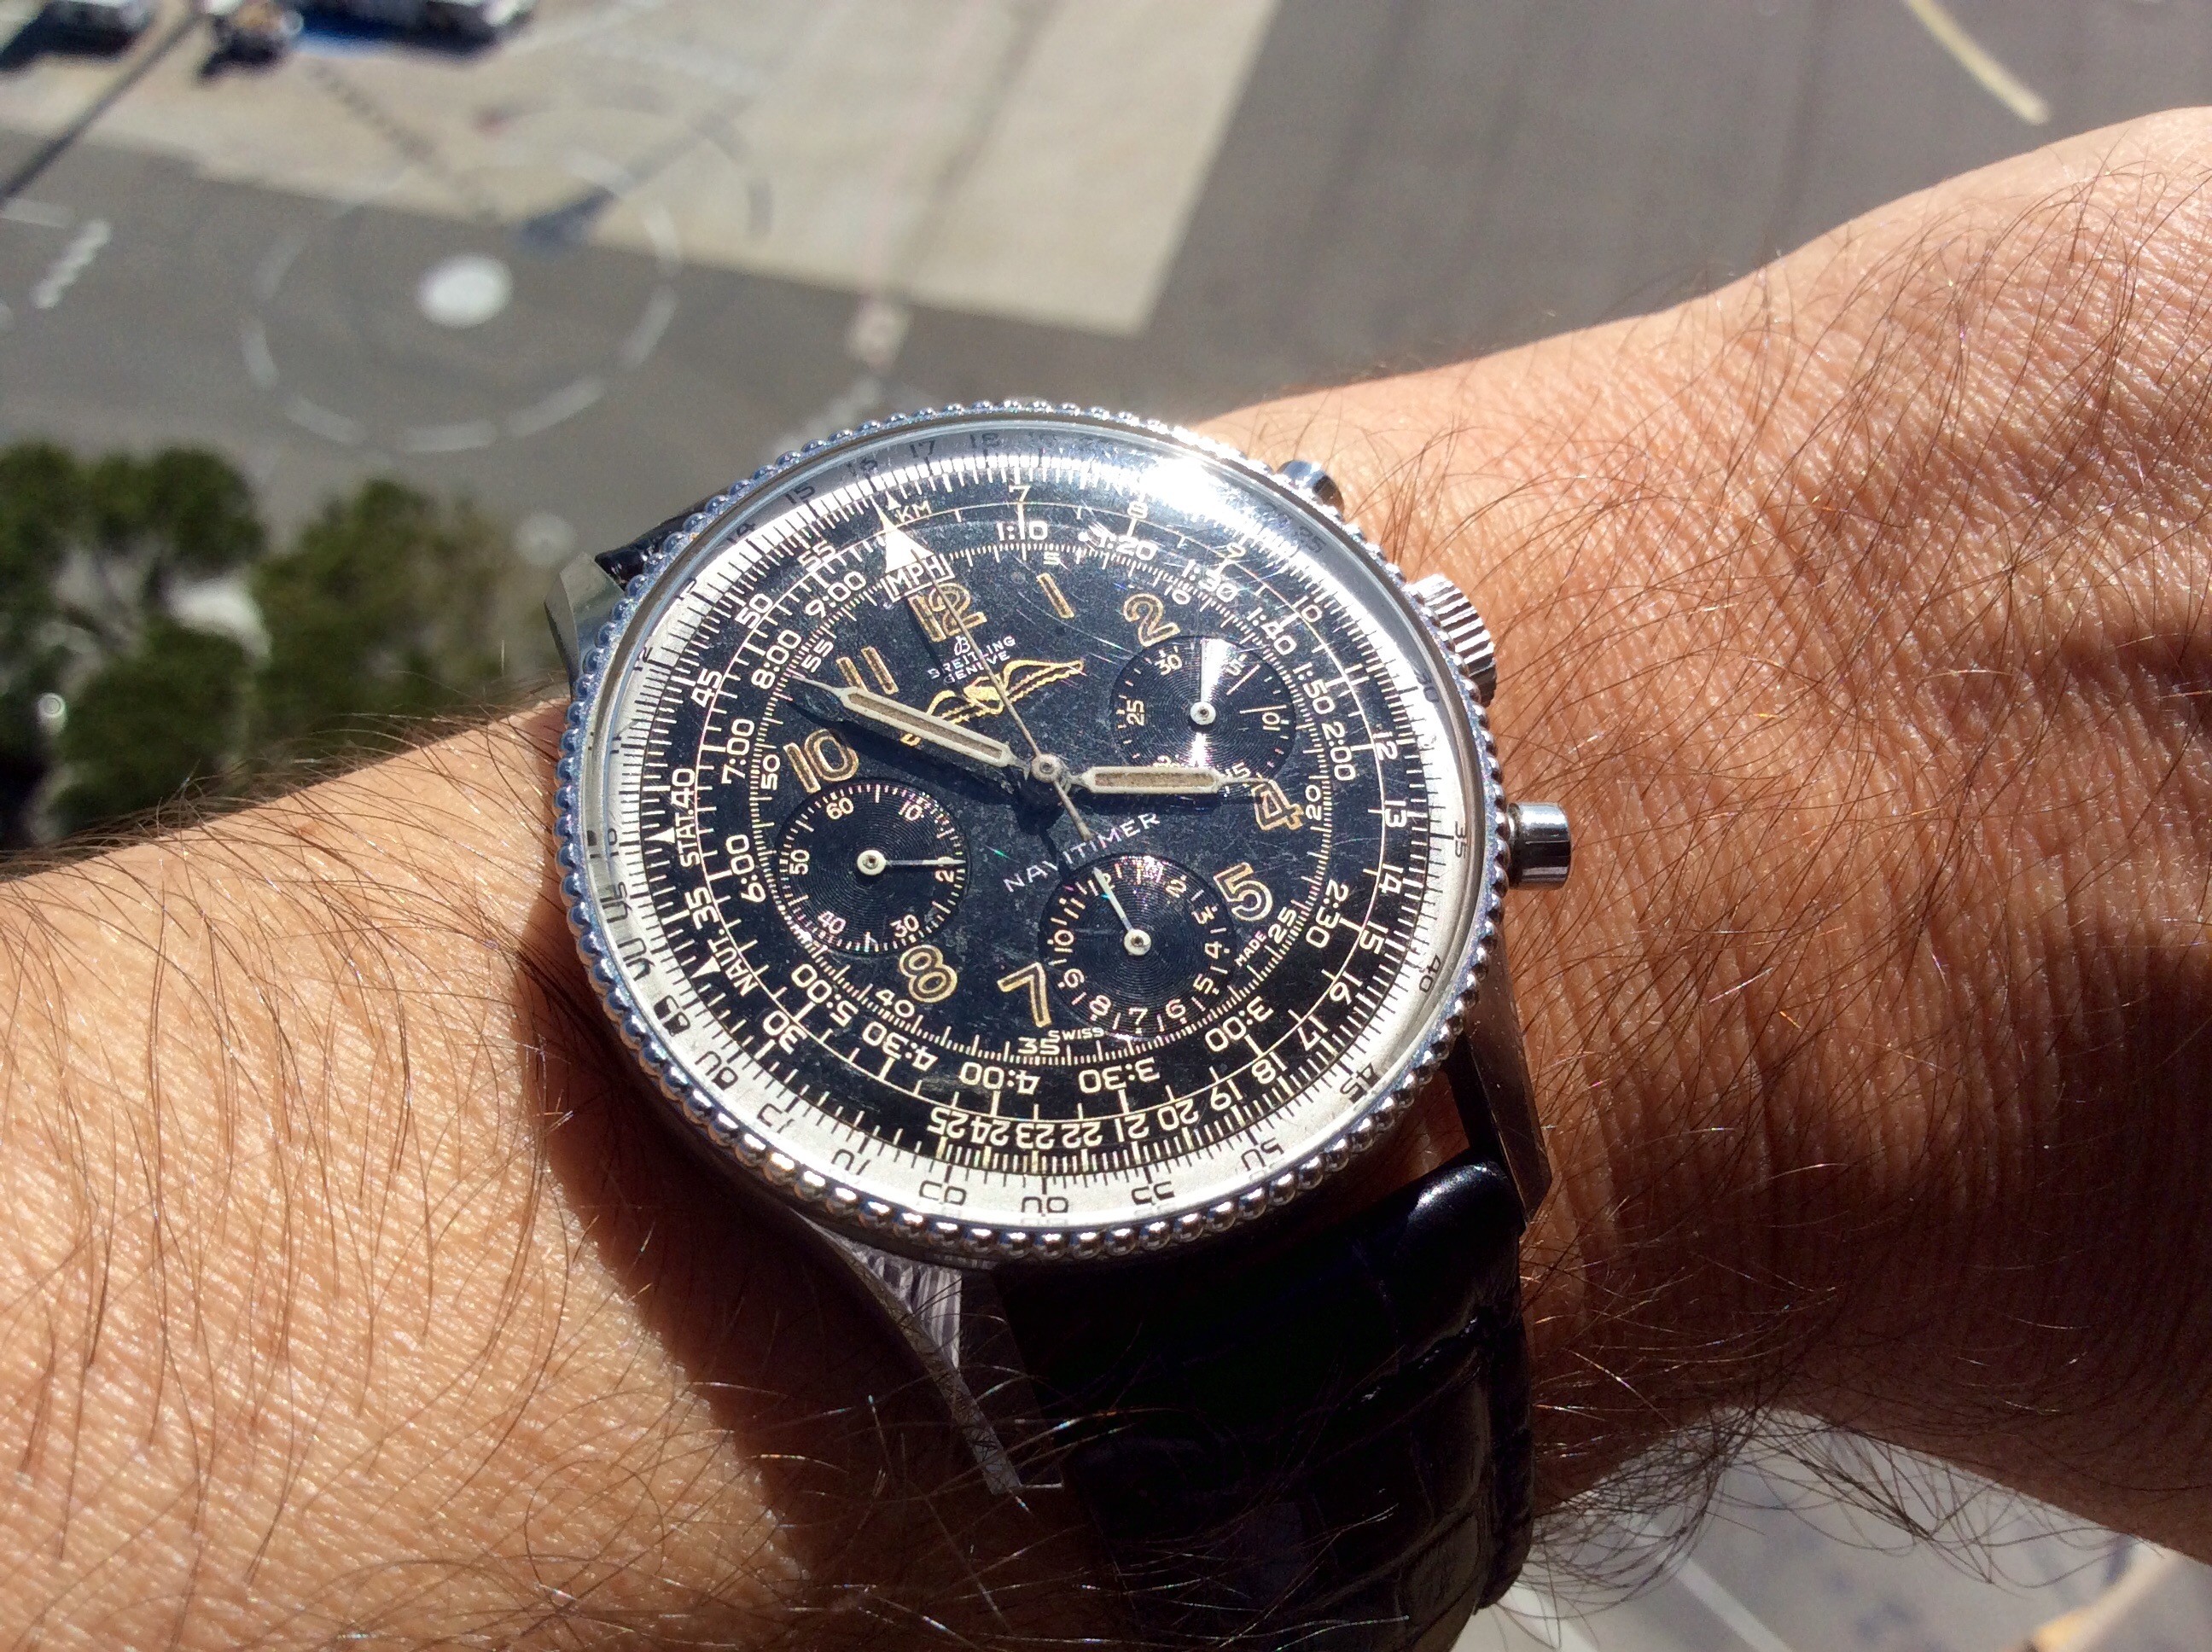 glashutte - Feu de vos montres d'aviateur, ou inspirées du monde aéronautique - Page 9 C2F8ADF4-8048-4066-A09C-6C40FB21E0C0